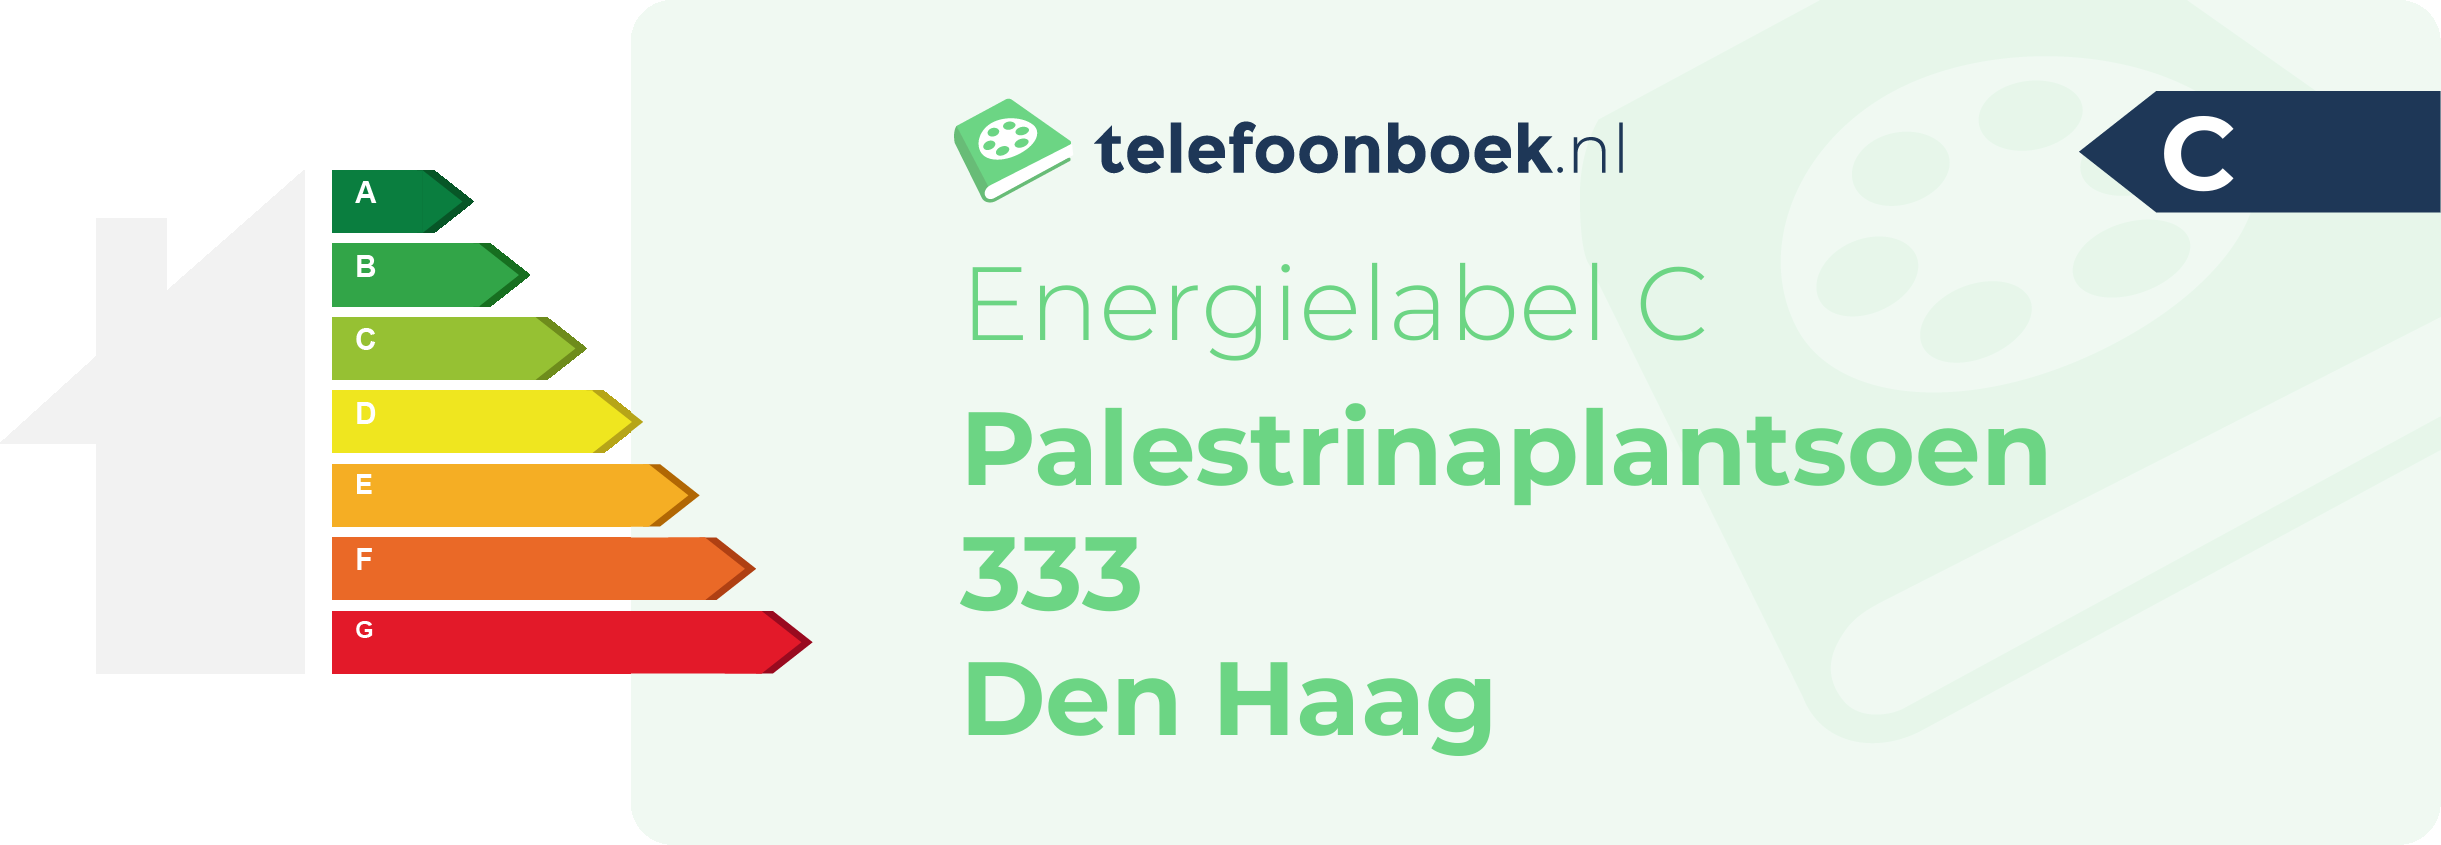 Energielabel Palestrinaplantsoen 333 Den Haag